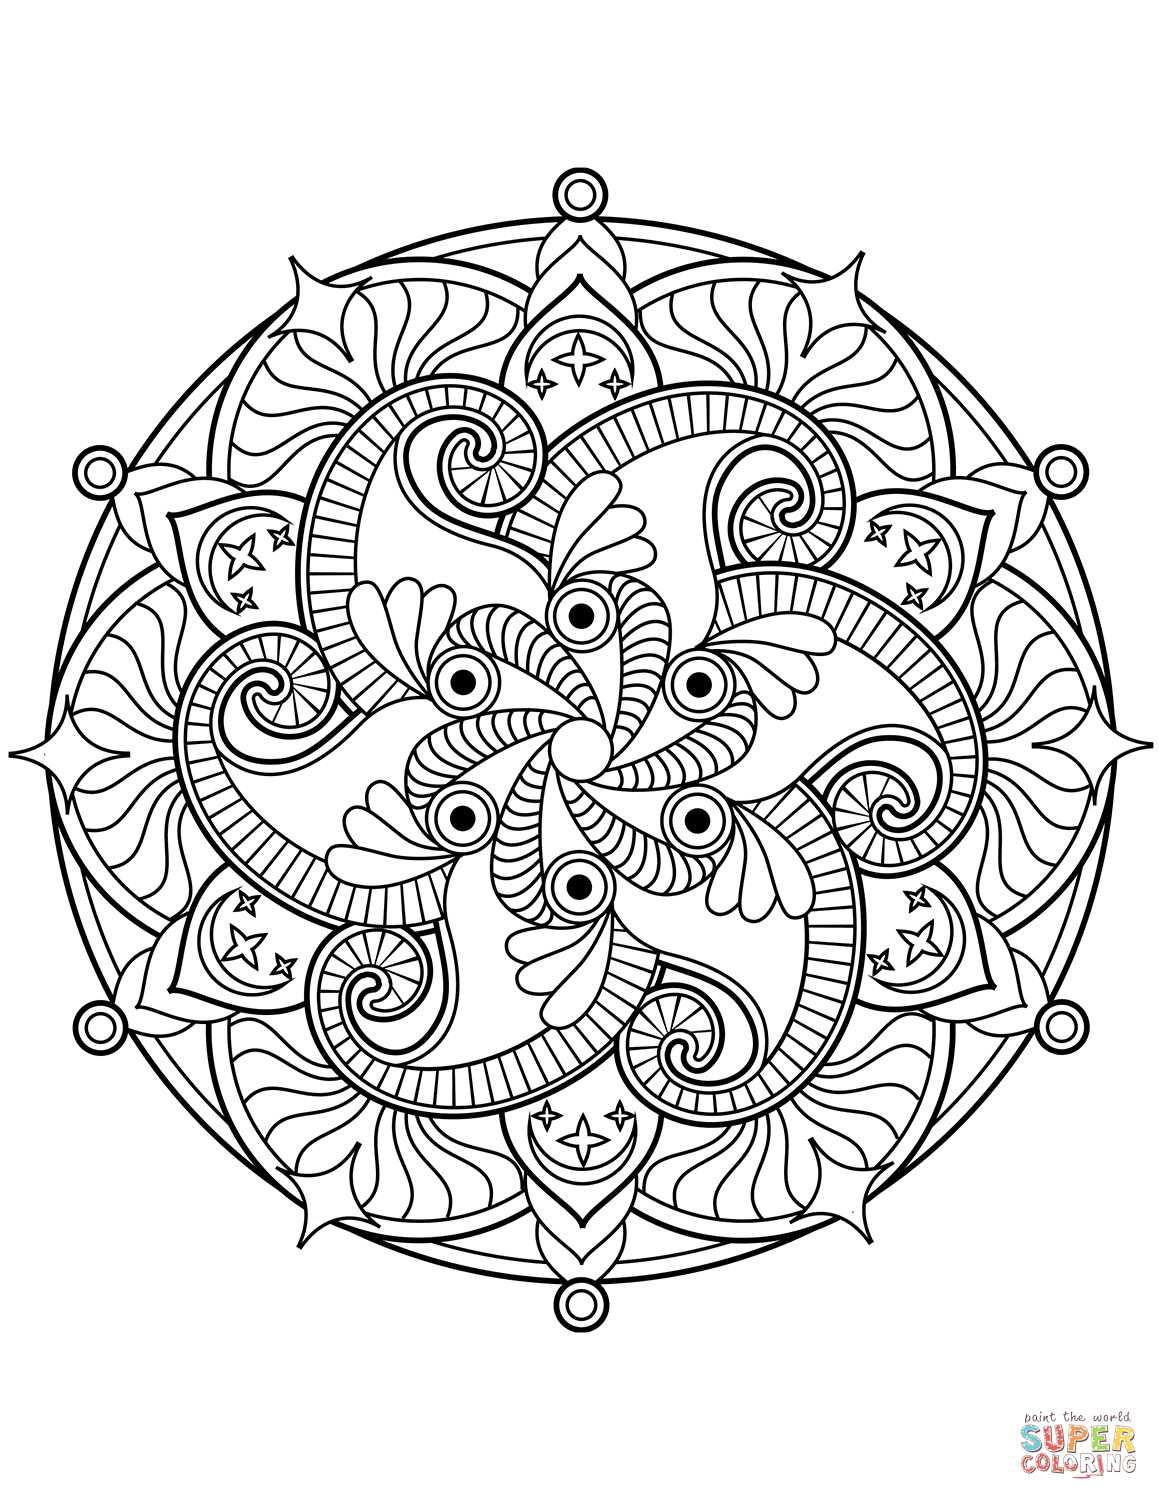 Ausmalbilder Mandala Blumen
 Ausmalbild Blumen Mandala